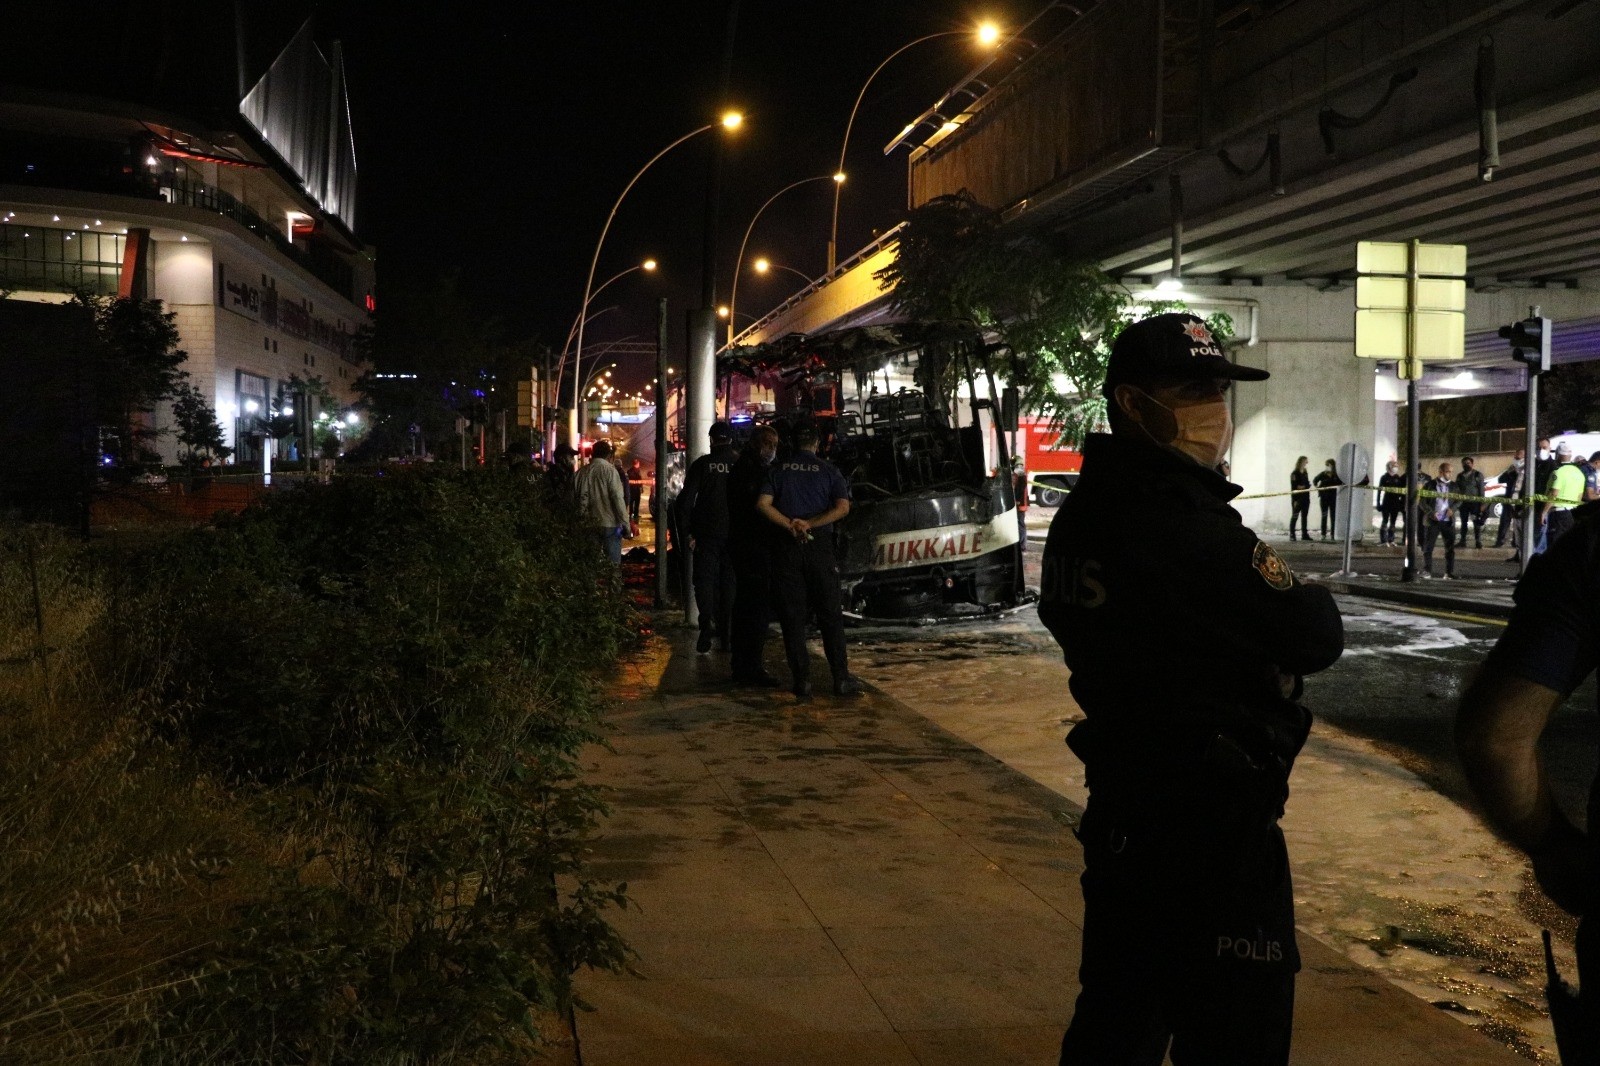 Başkent’te yolcu otobüsü önce levha daha sonra aydınlatma direğine çarparak alev aldı: 1 kişi hayatını kaybederken 3 ağır, 17 kişi yaralandı